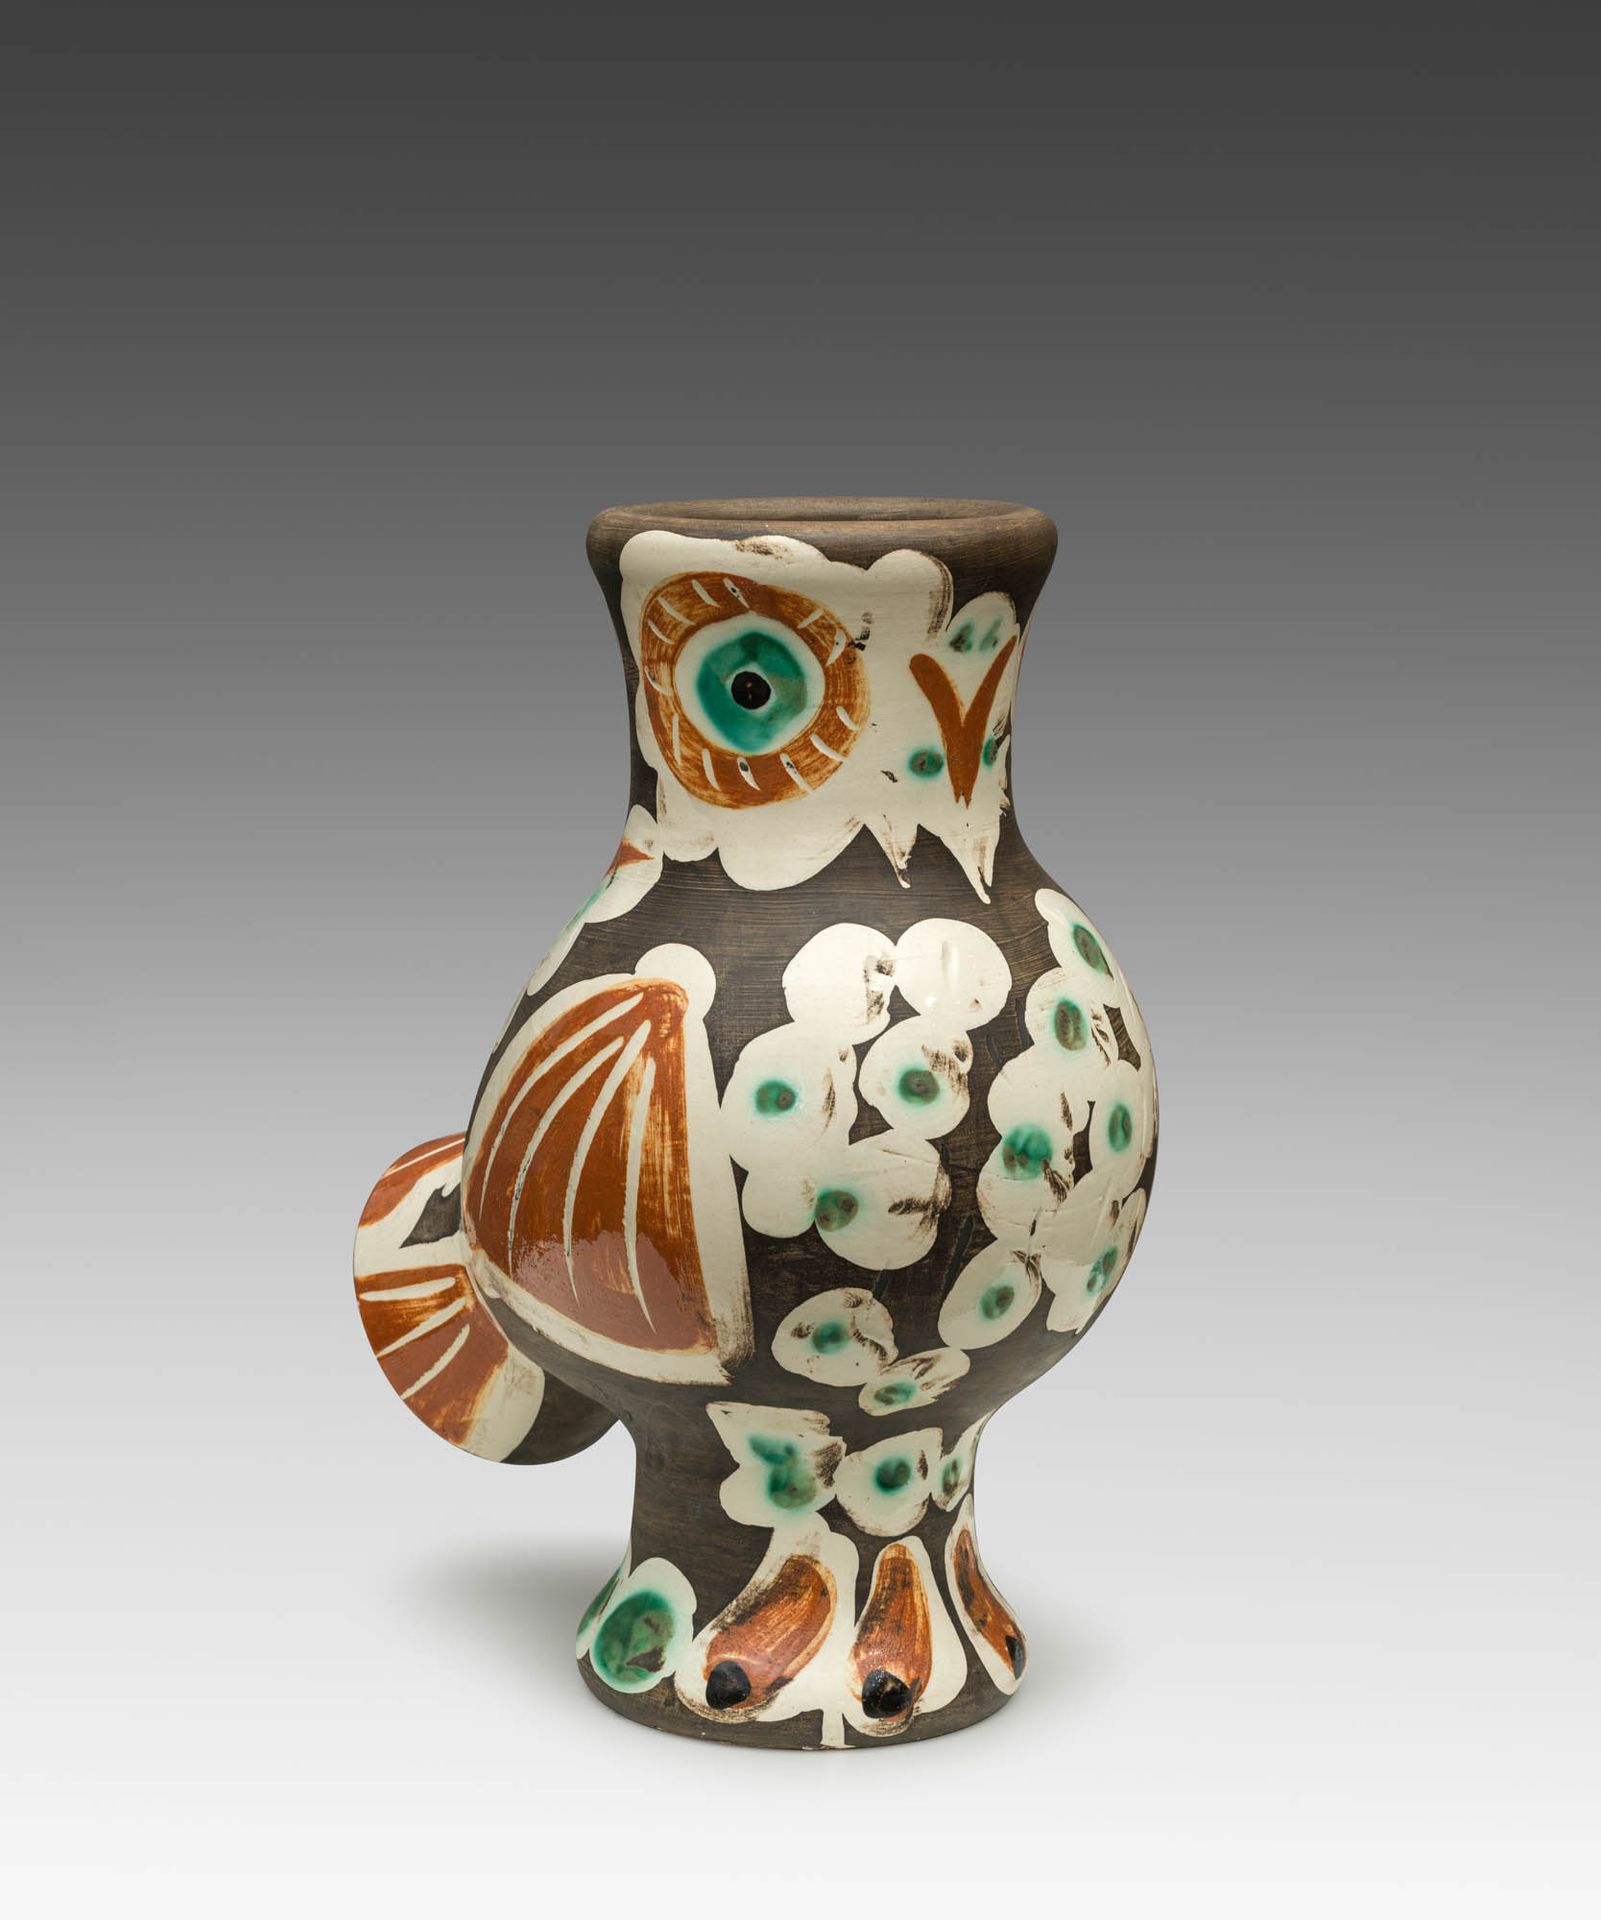 Pablo Picasso 1881–1973 Pablo Picasso 1881-1973

Chouette, 1969

Ceramica, dipin&hellip;